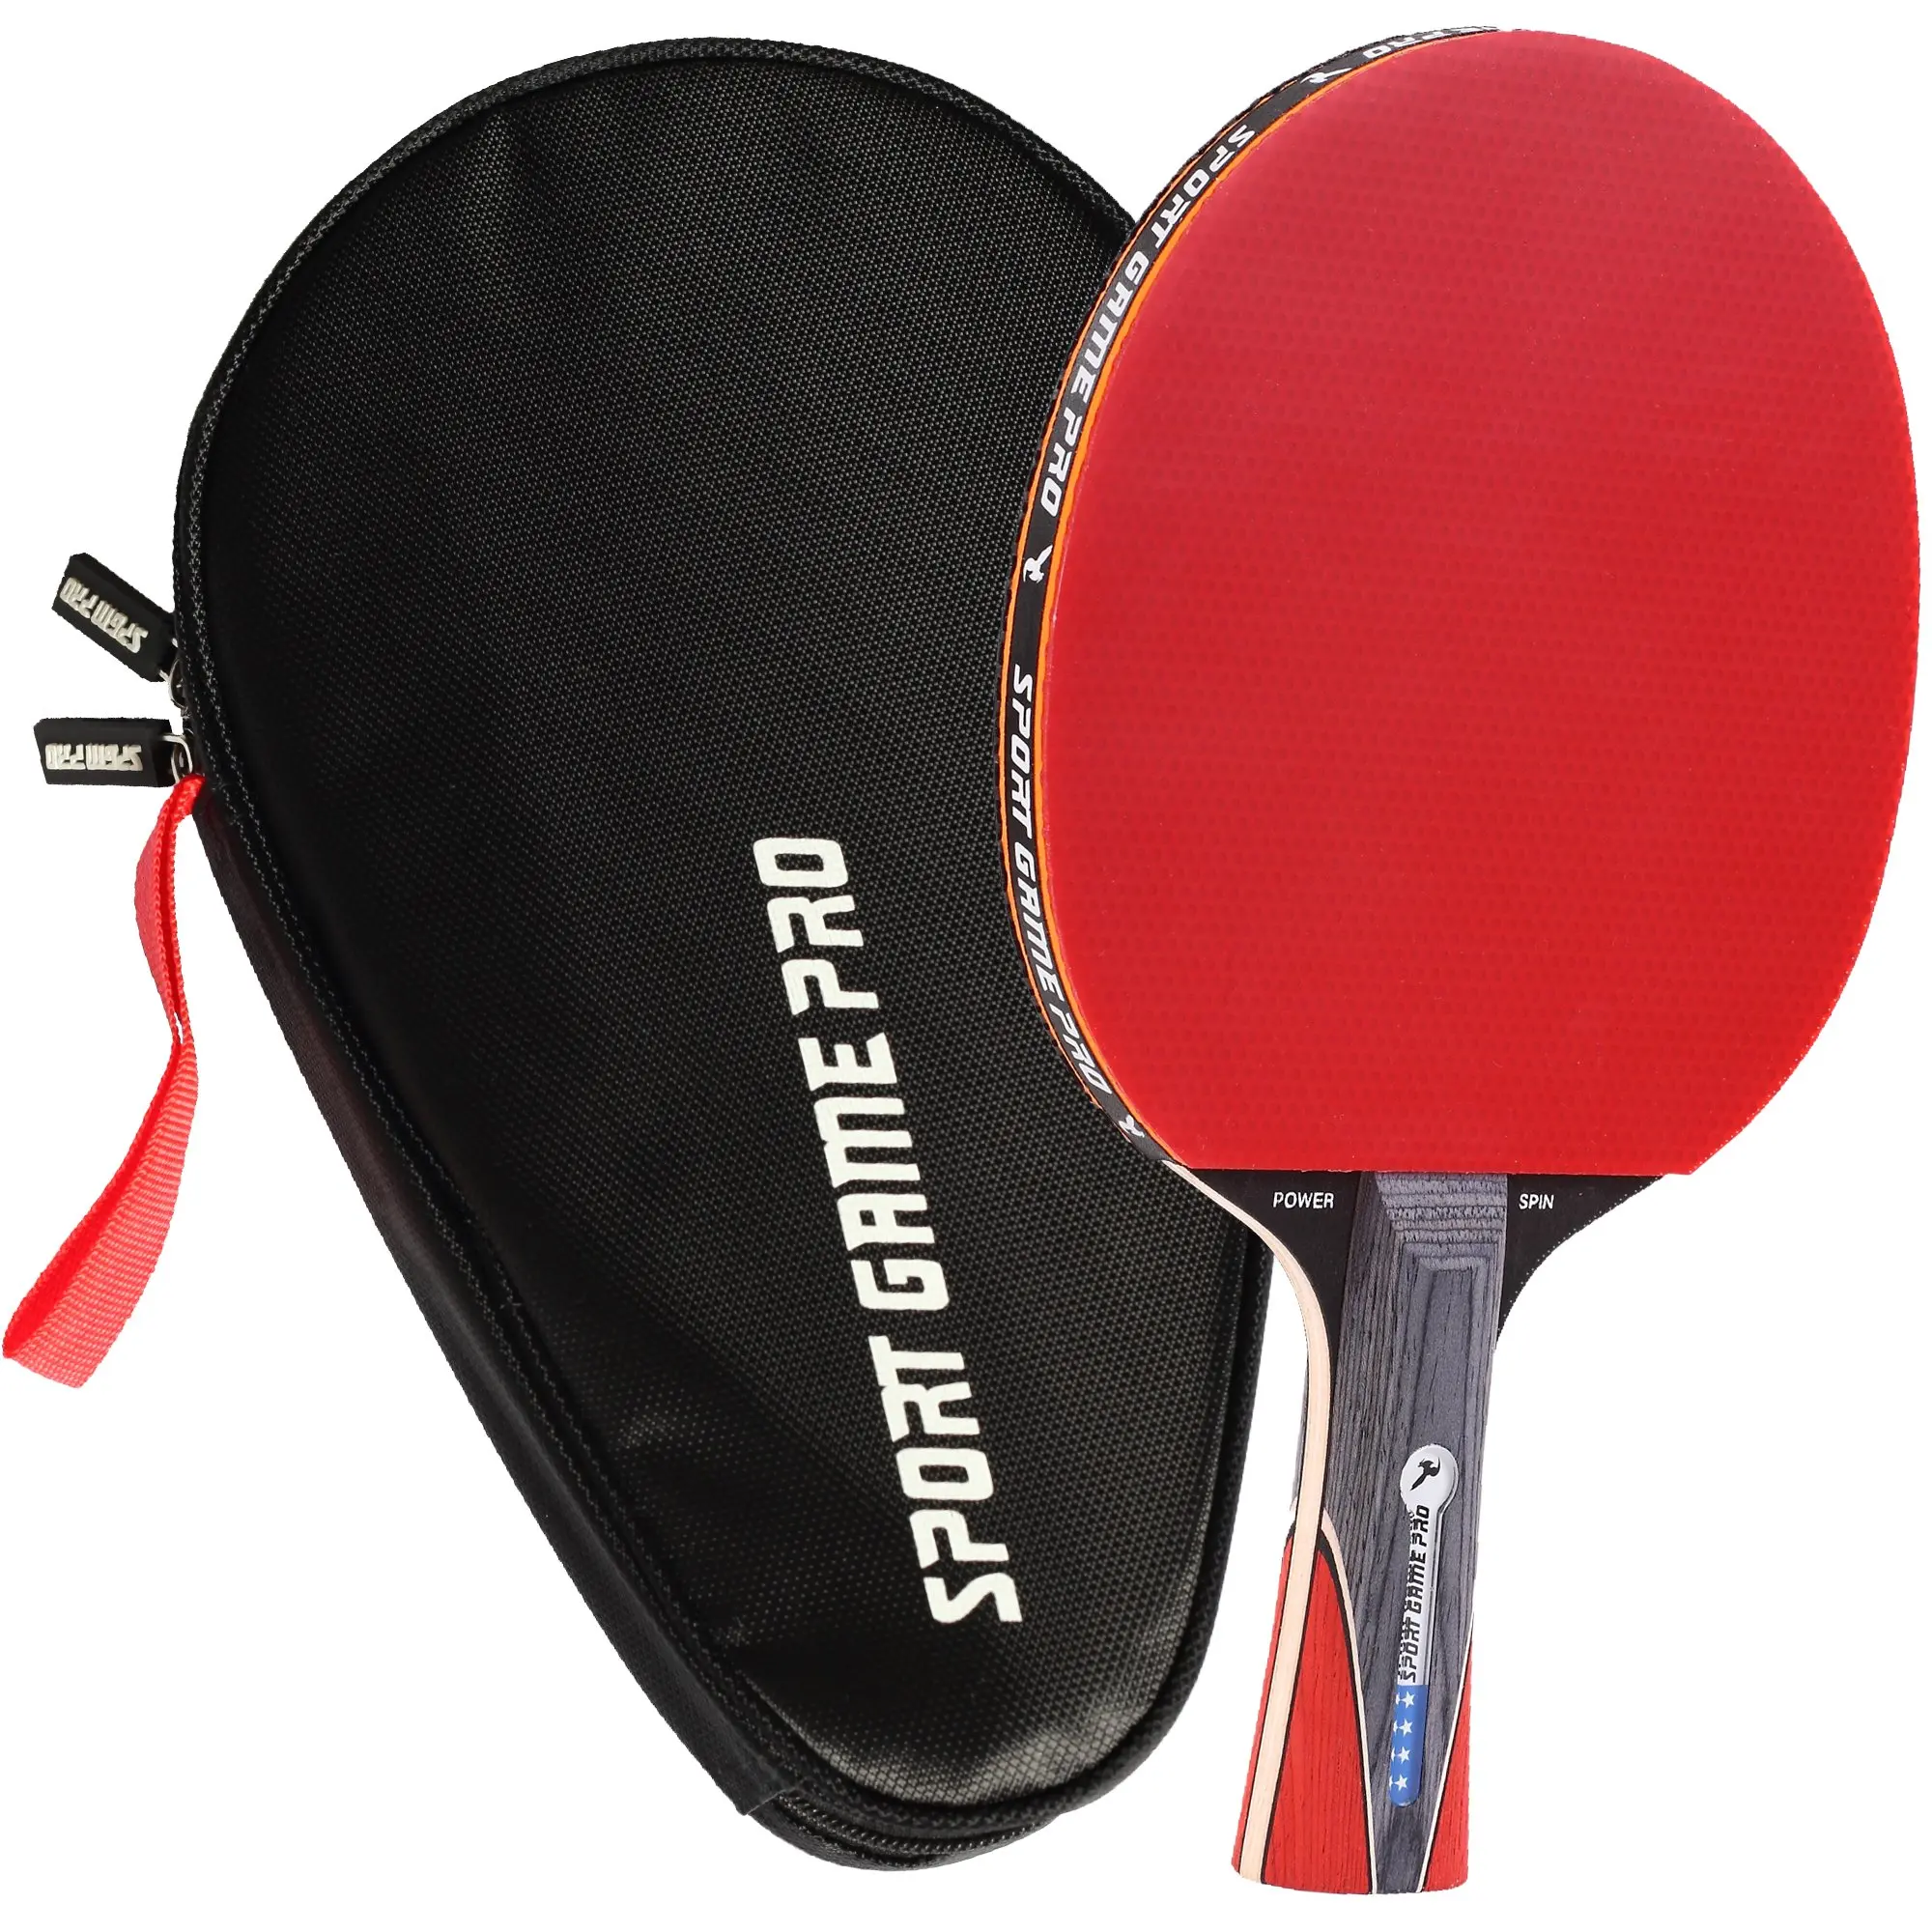 Ракетка для настольного тенниса цена. Ракетка для Paddle Tennis. Table Tennis Racket набор. ARTENGO ракетки для настольного тенниса. Ракетка Dobest Champion line 6.